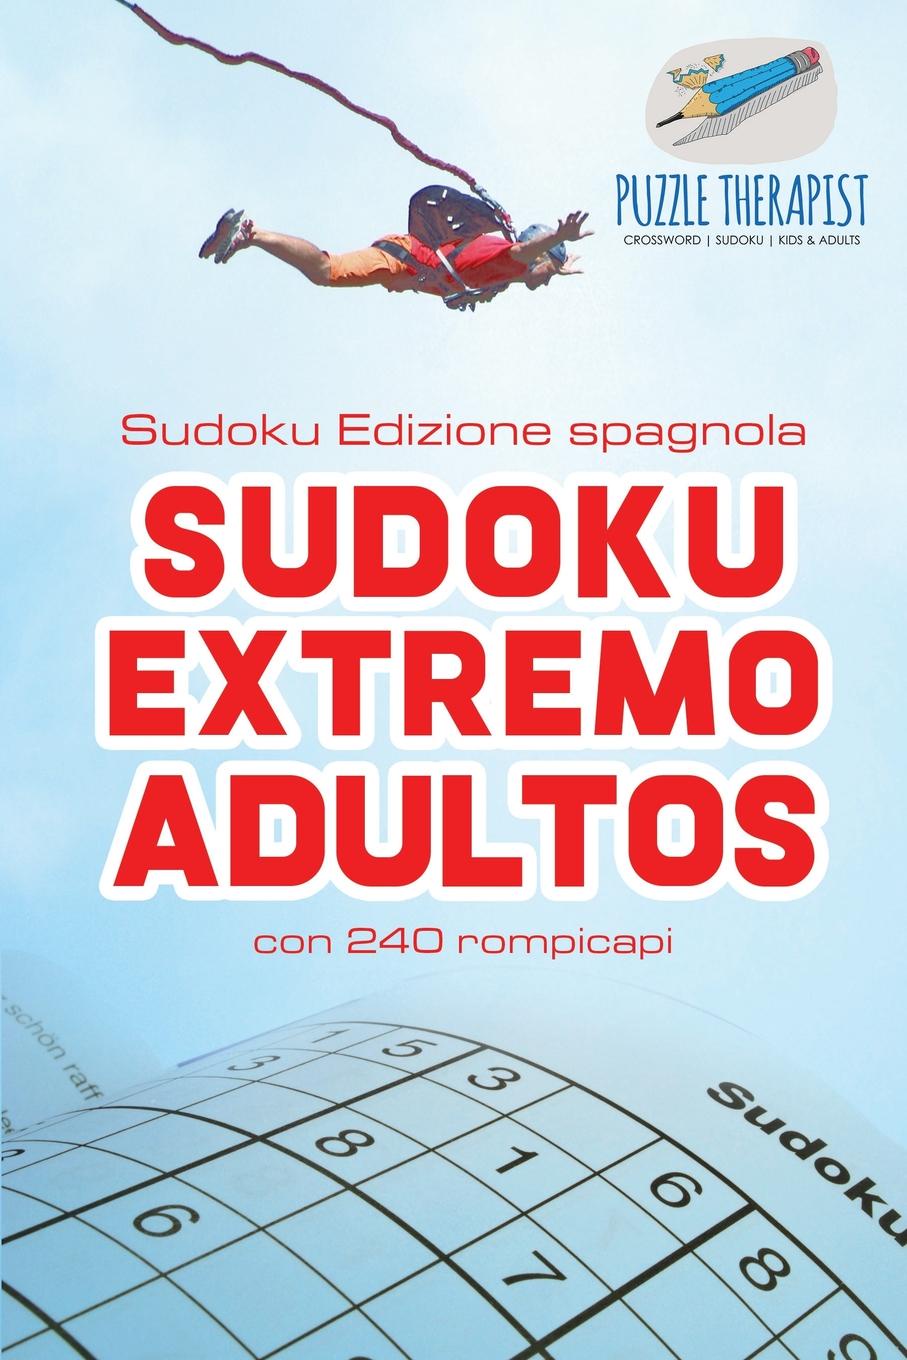 Puzzle Therapist Sudoku Extremo Adultos . Sudoku Edizione spagnola . con 240 rompicapi